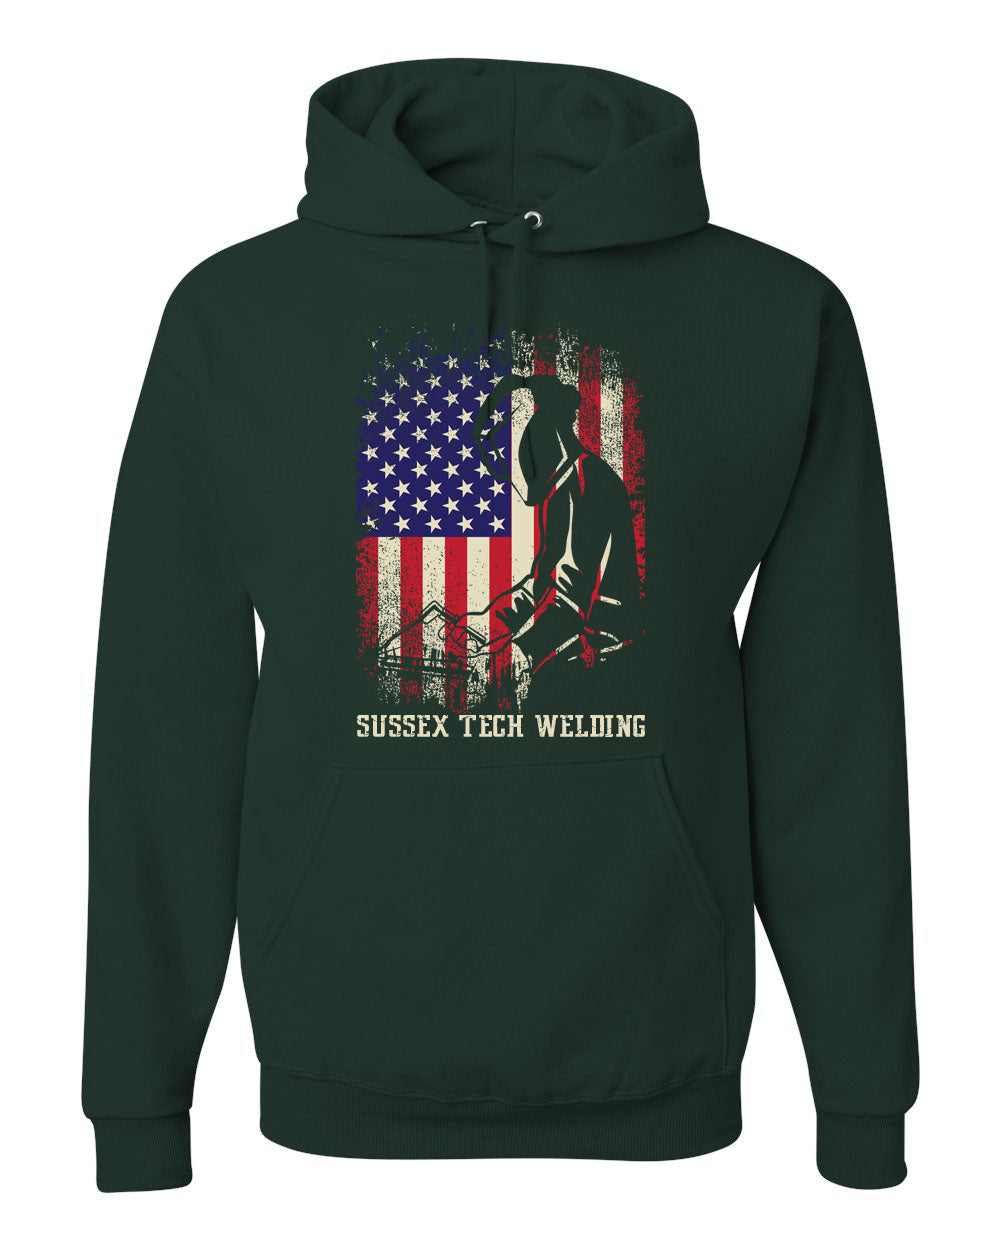 Sussex Tech Welding Design 5 Hooded Sweatshirt